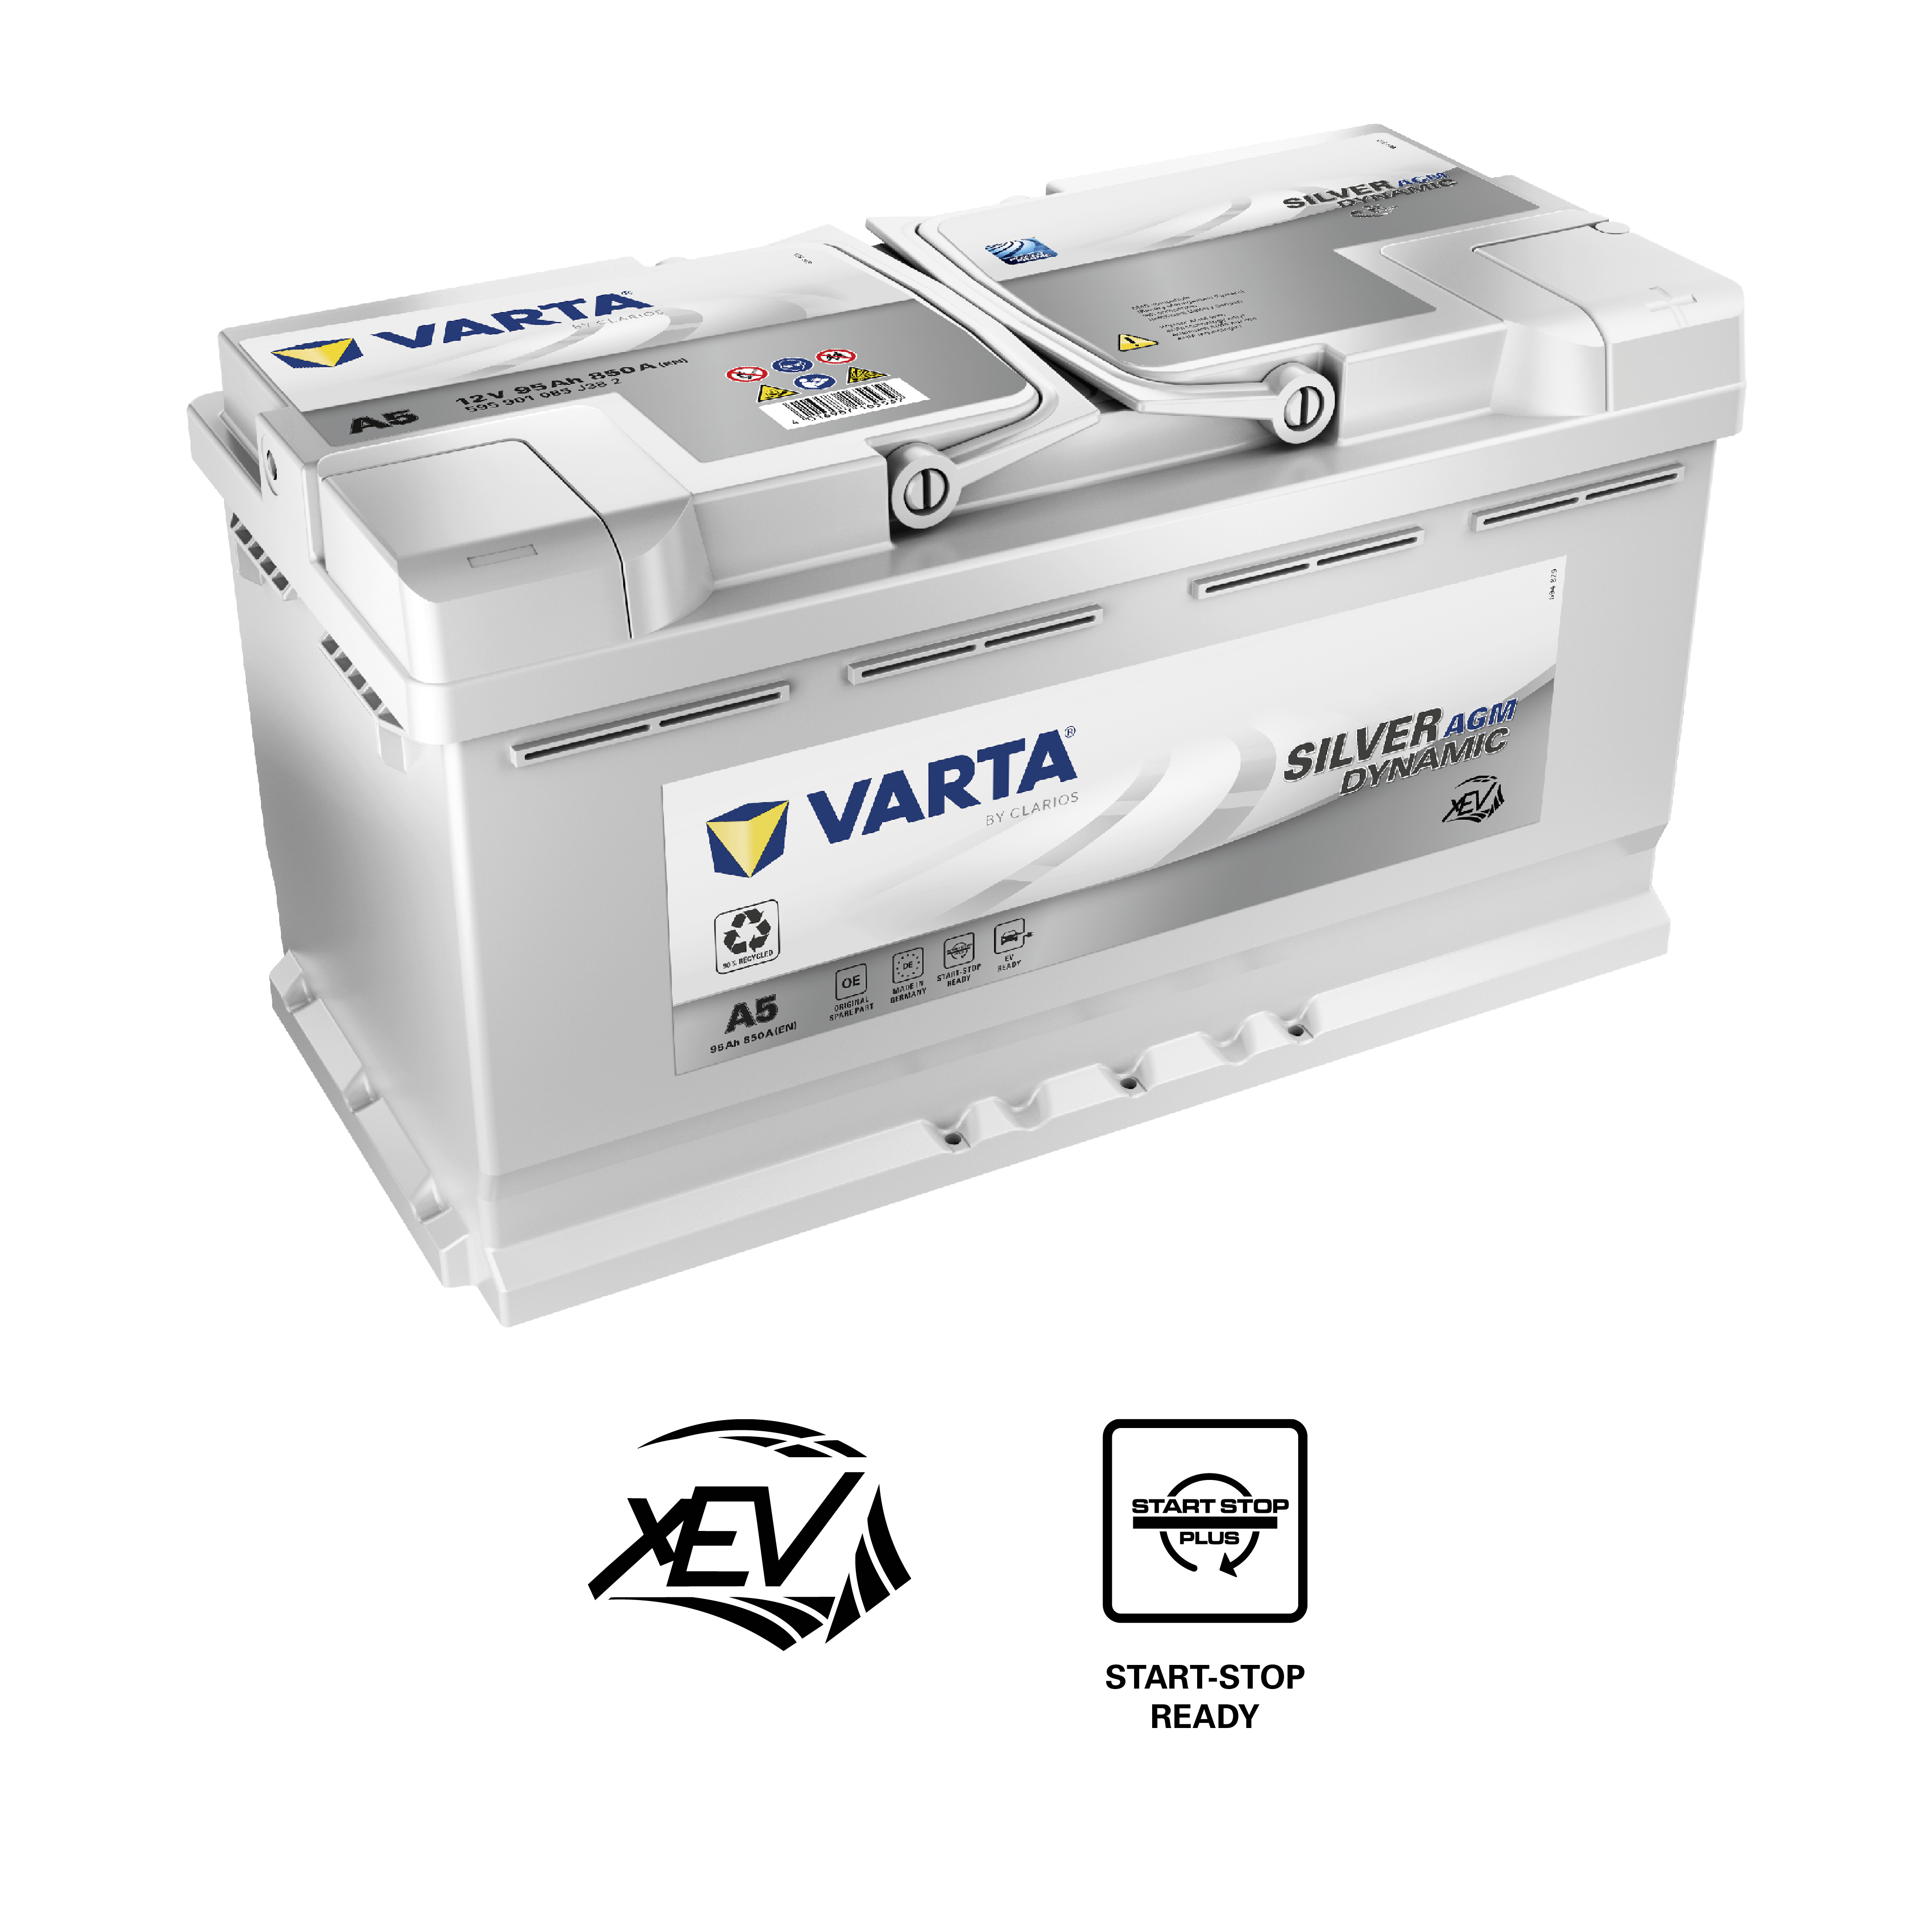 VARTA BLUE dynamic E43 Autobatterie Batterie Starterbatterie 12V